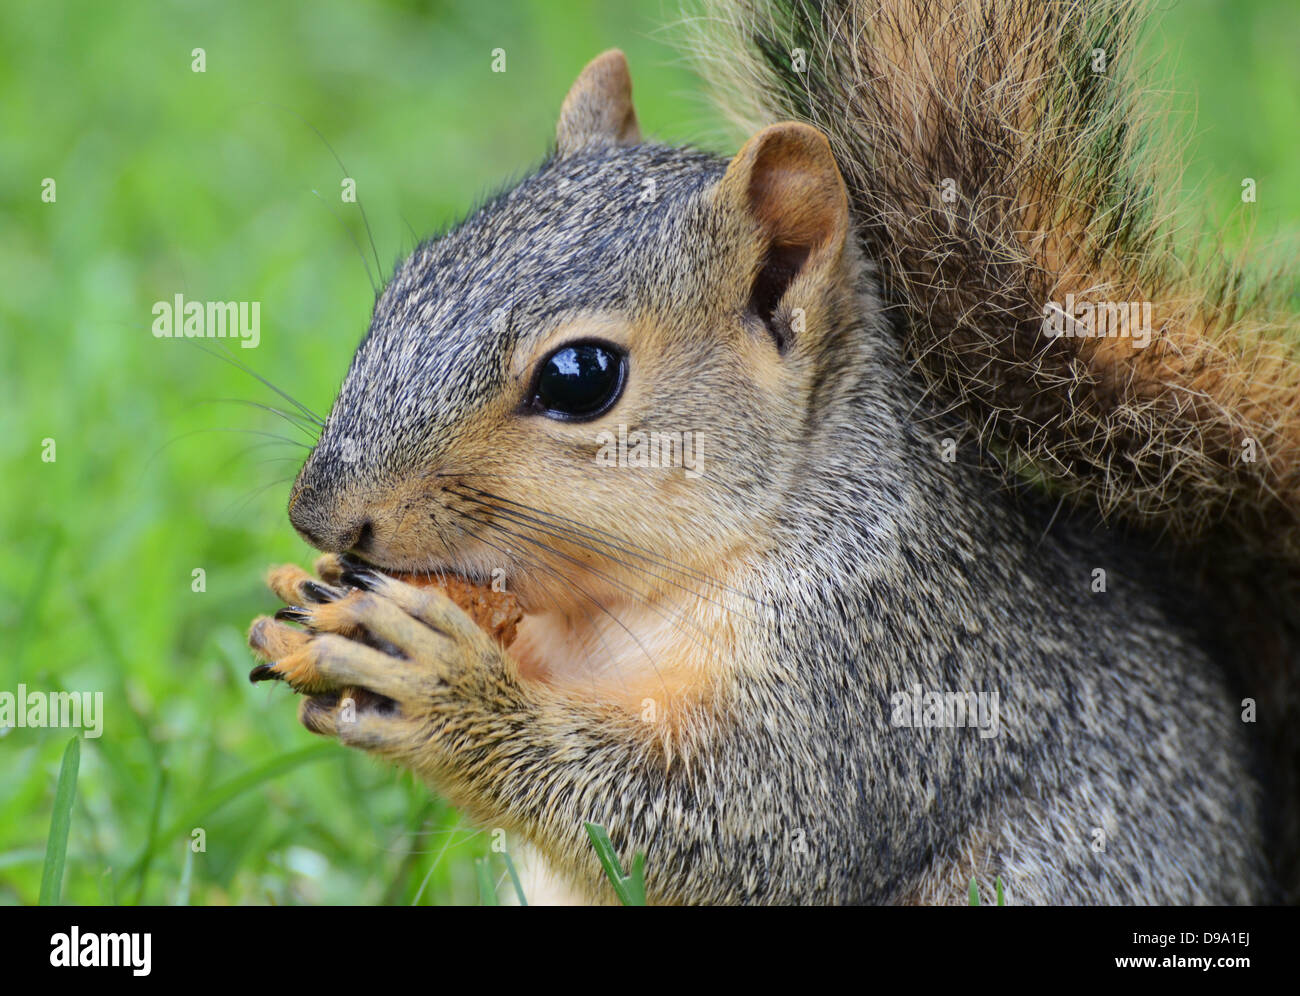 Eichhörnchen Essen Erdnuss, von der Seite gesehen Stockfoto